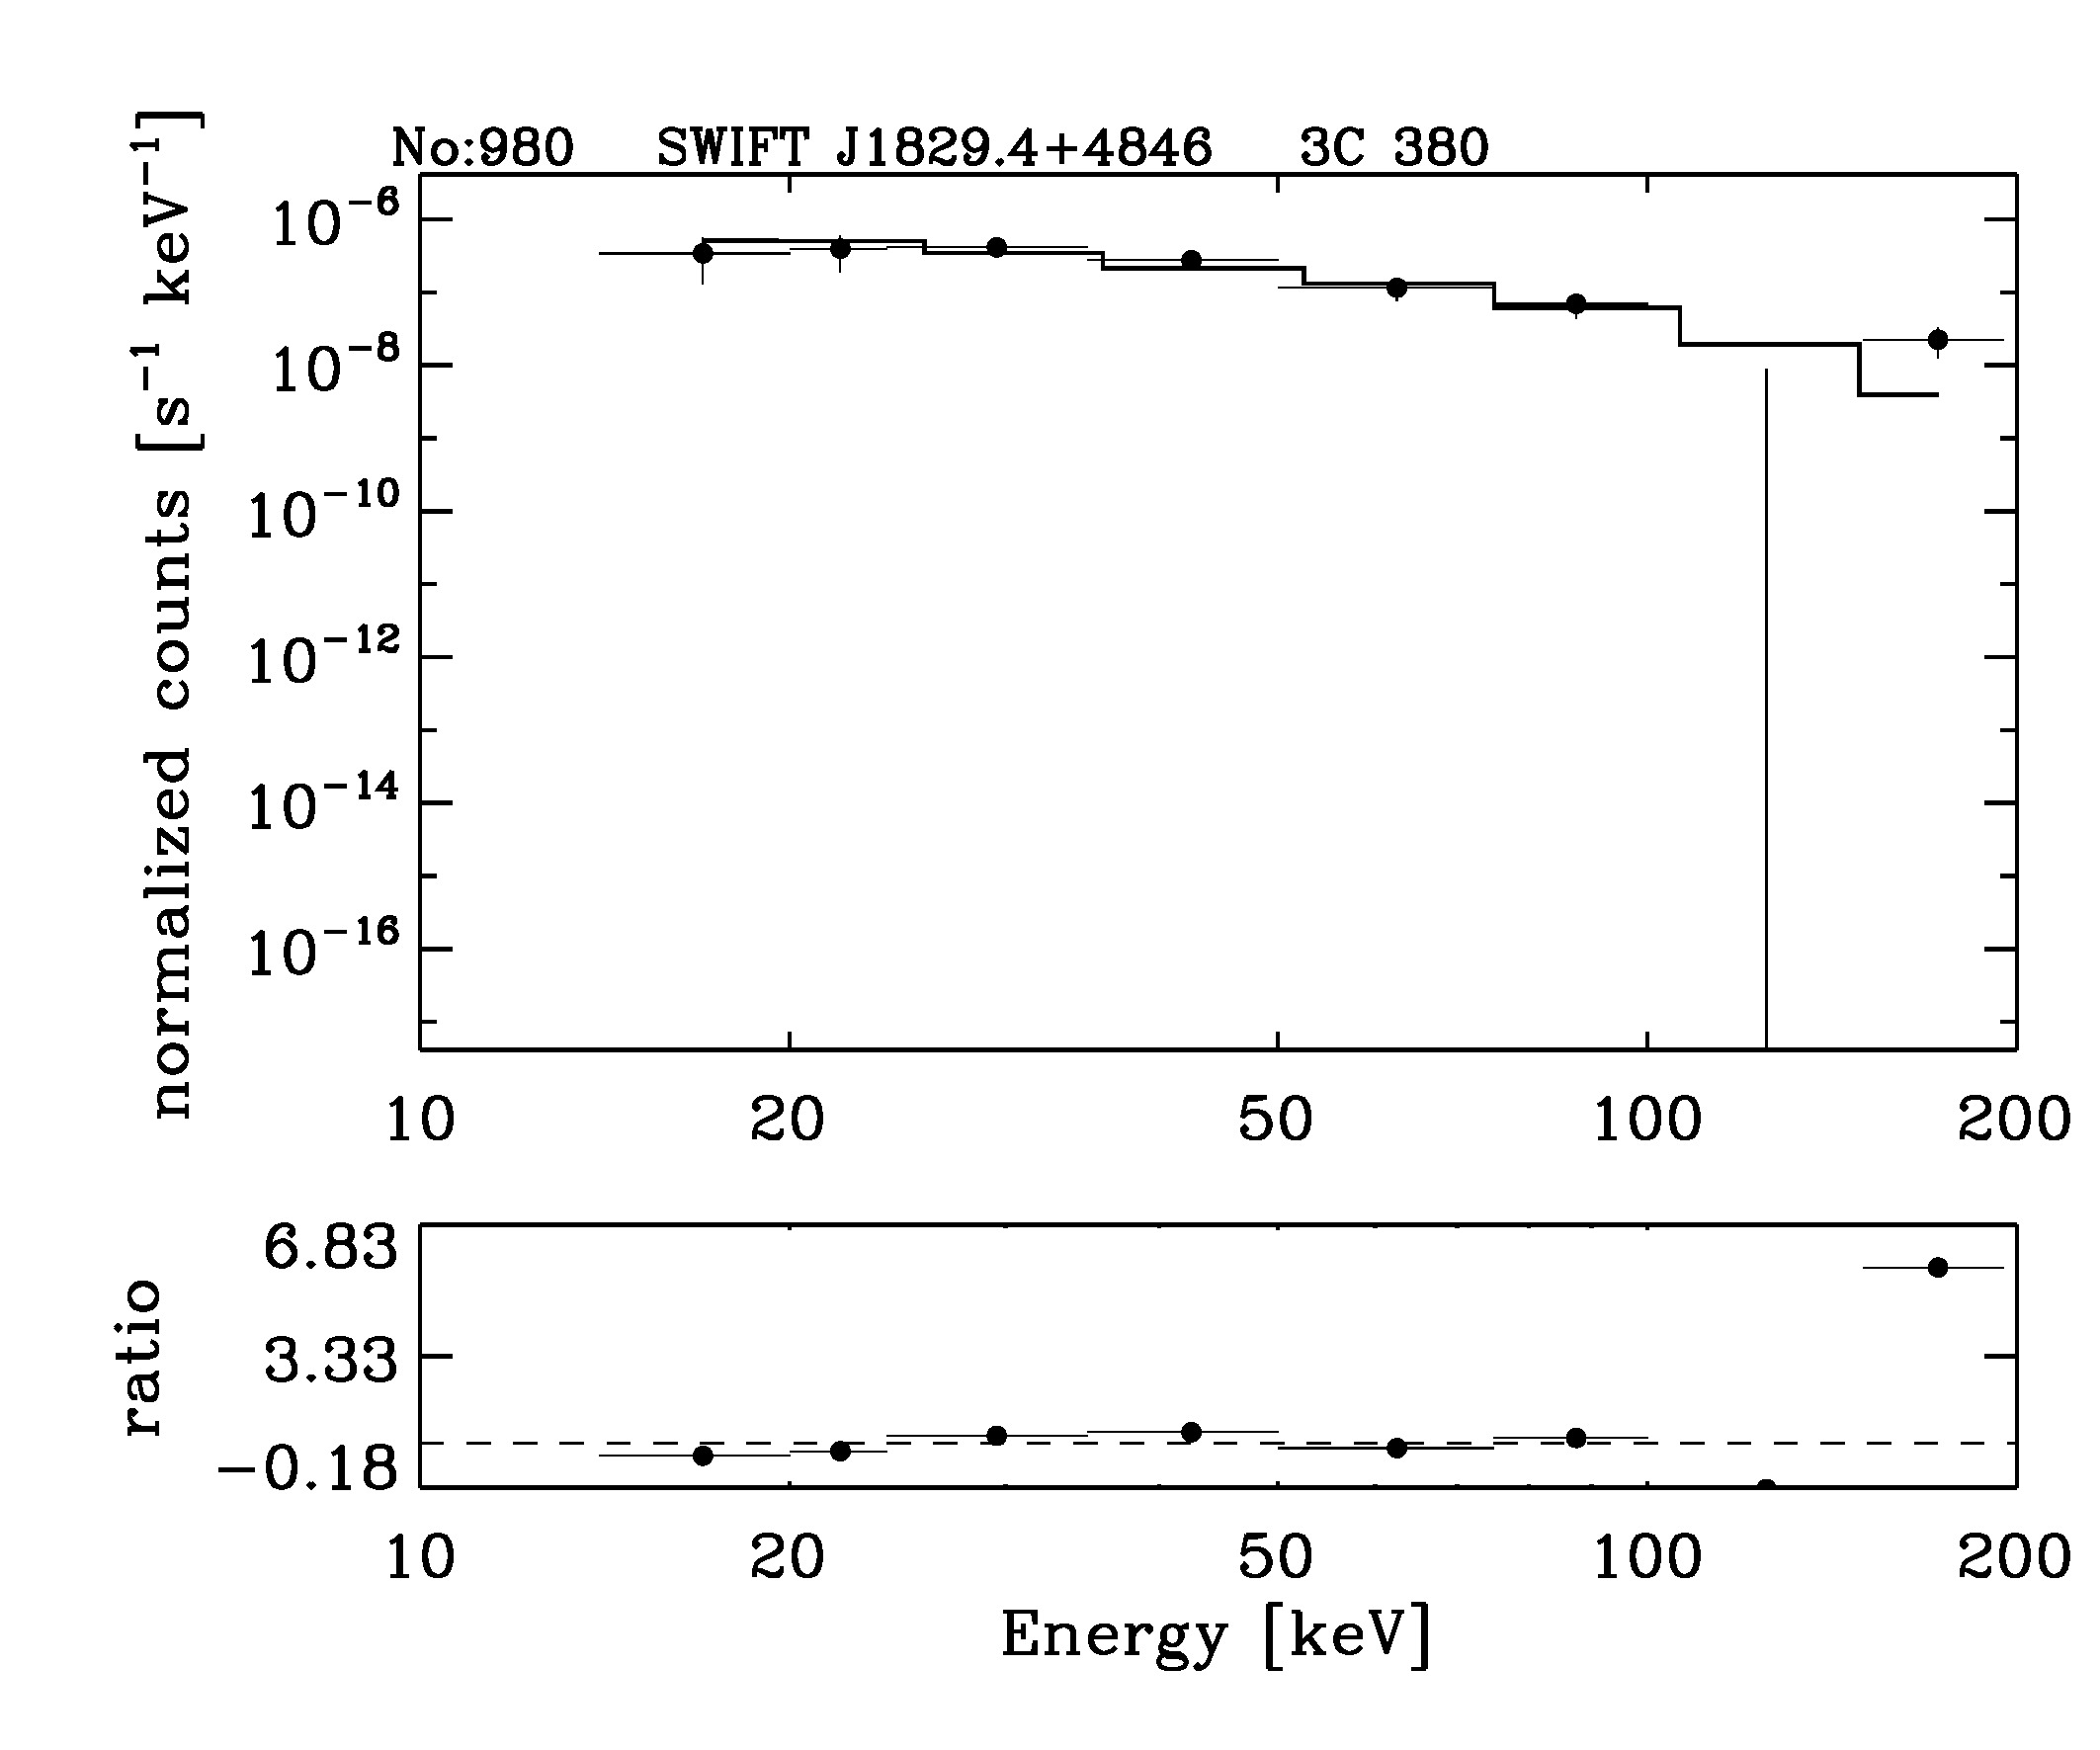 BAT Spectrum for SWIFT J1829.4+4846